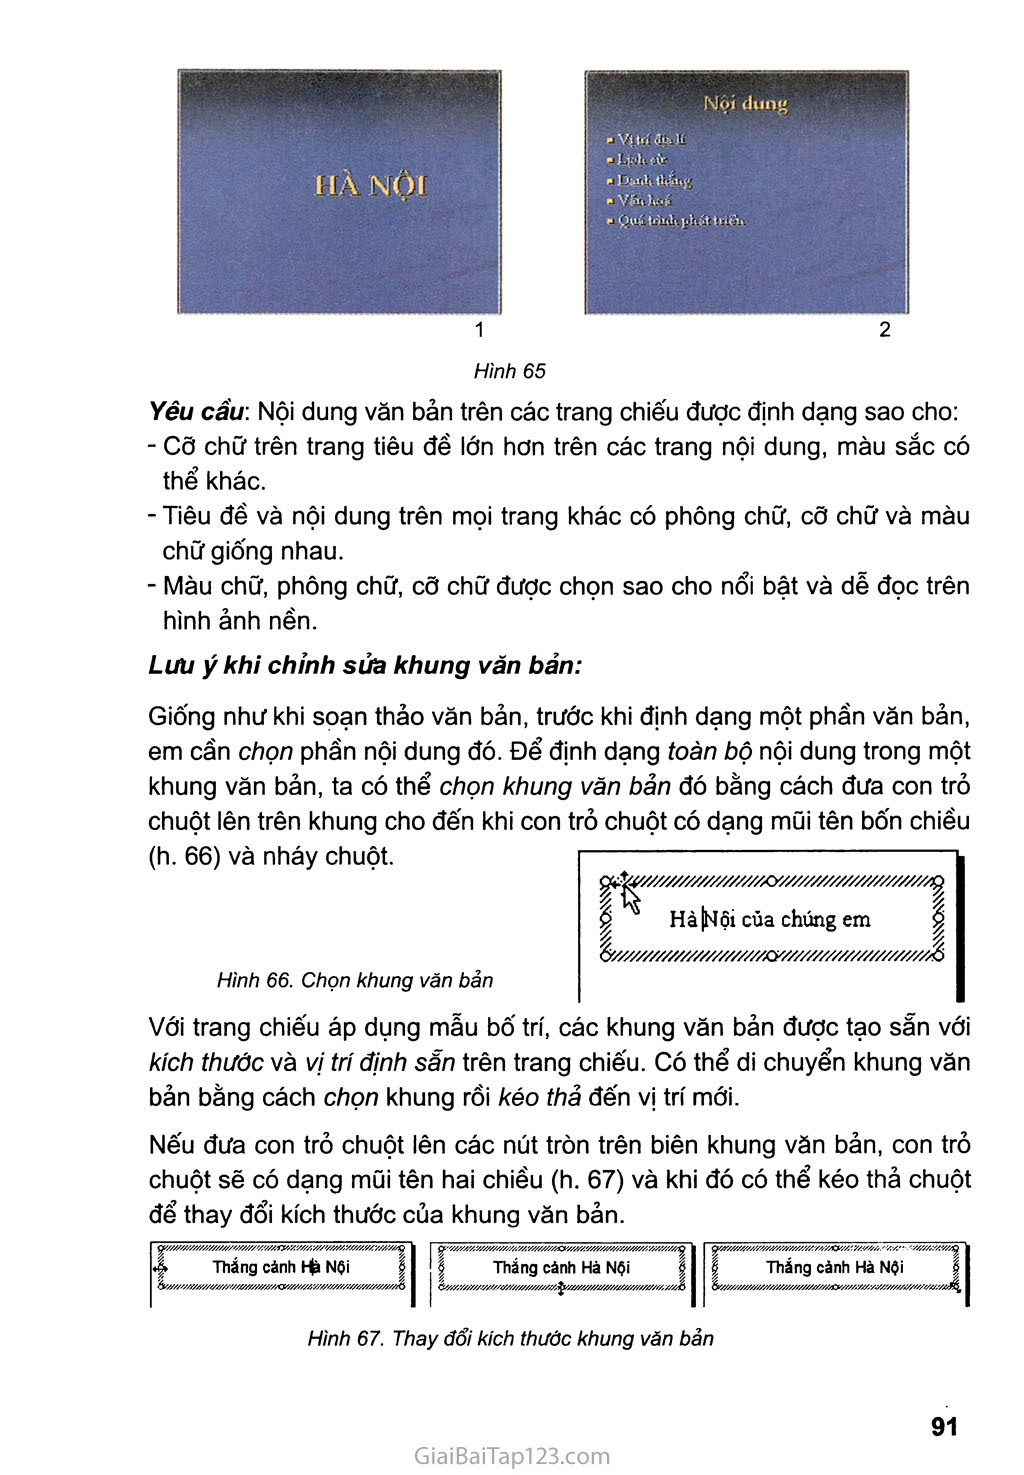 Bài thực hành 6. Thêm màu sắc cho bài trình chiếu trang 4